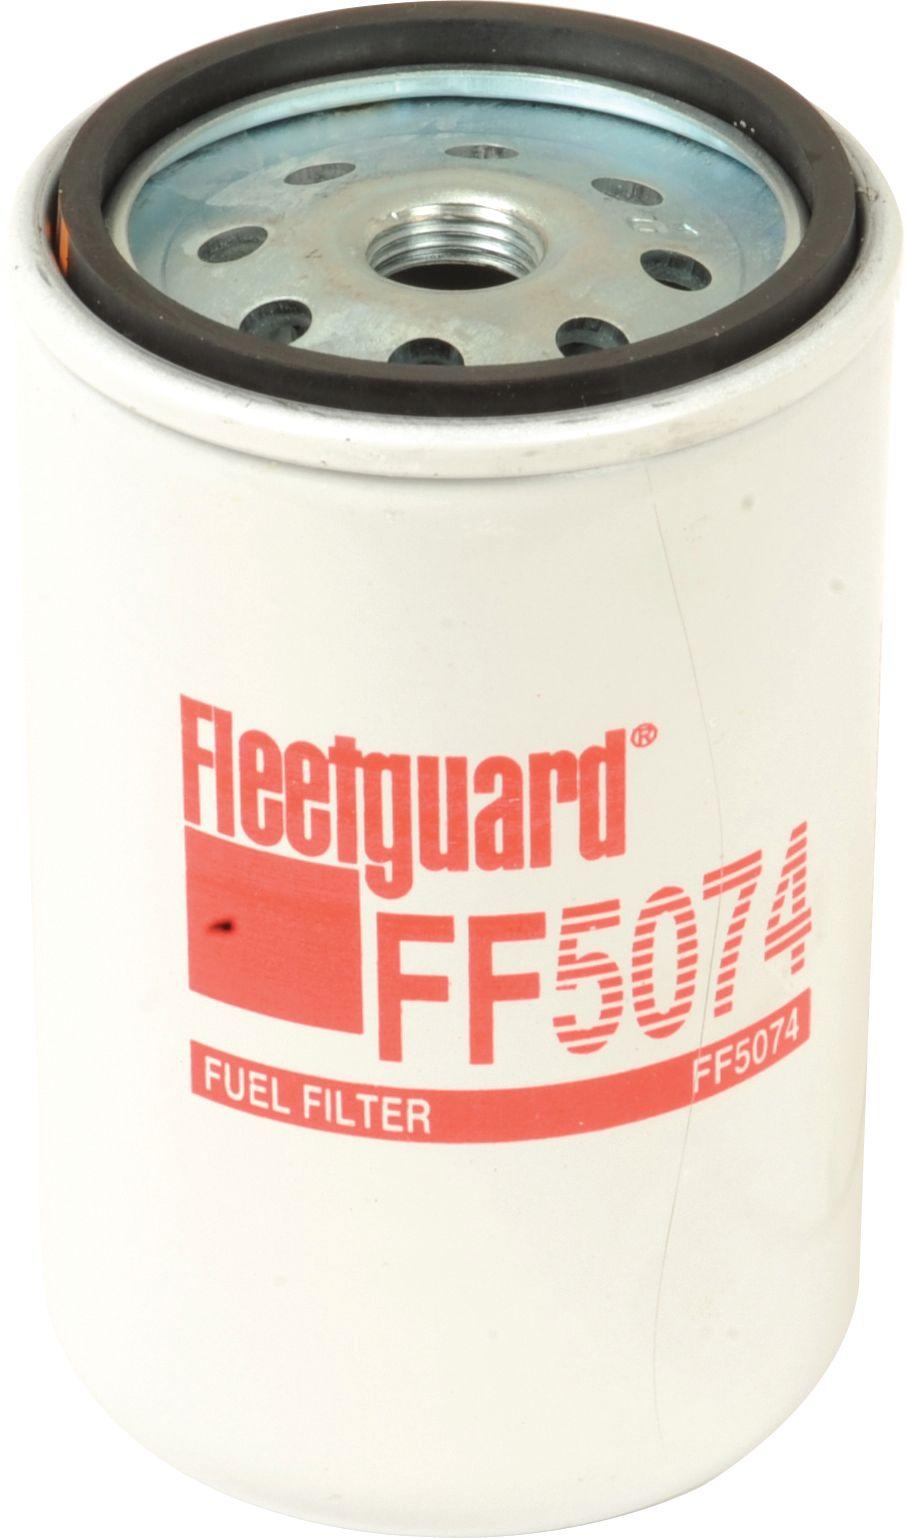 RENAULT FUEL FILTER FF5074 109059